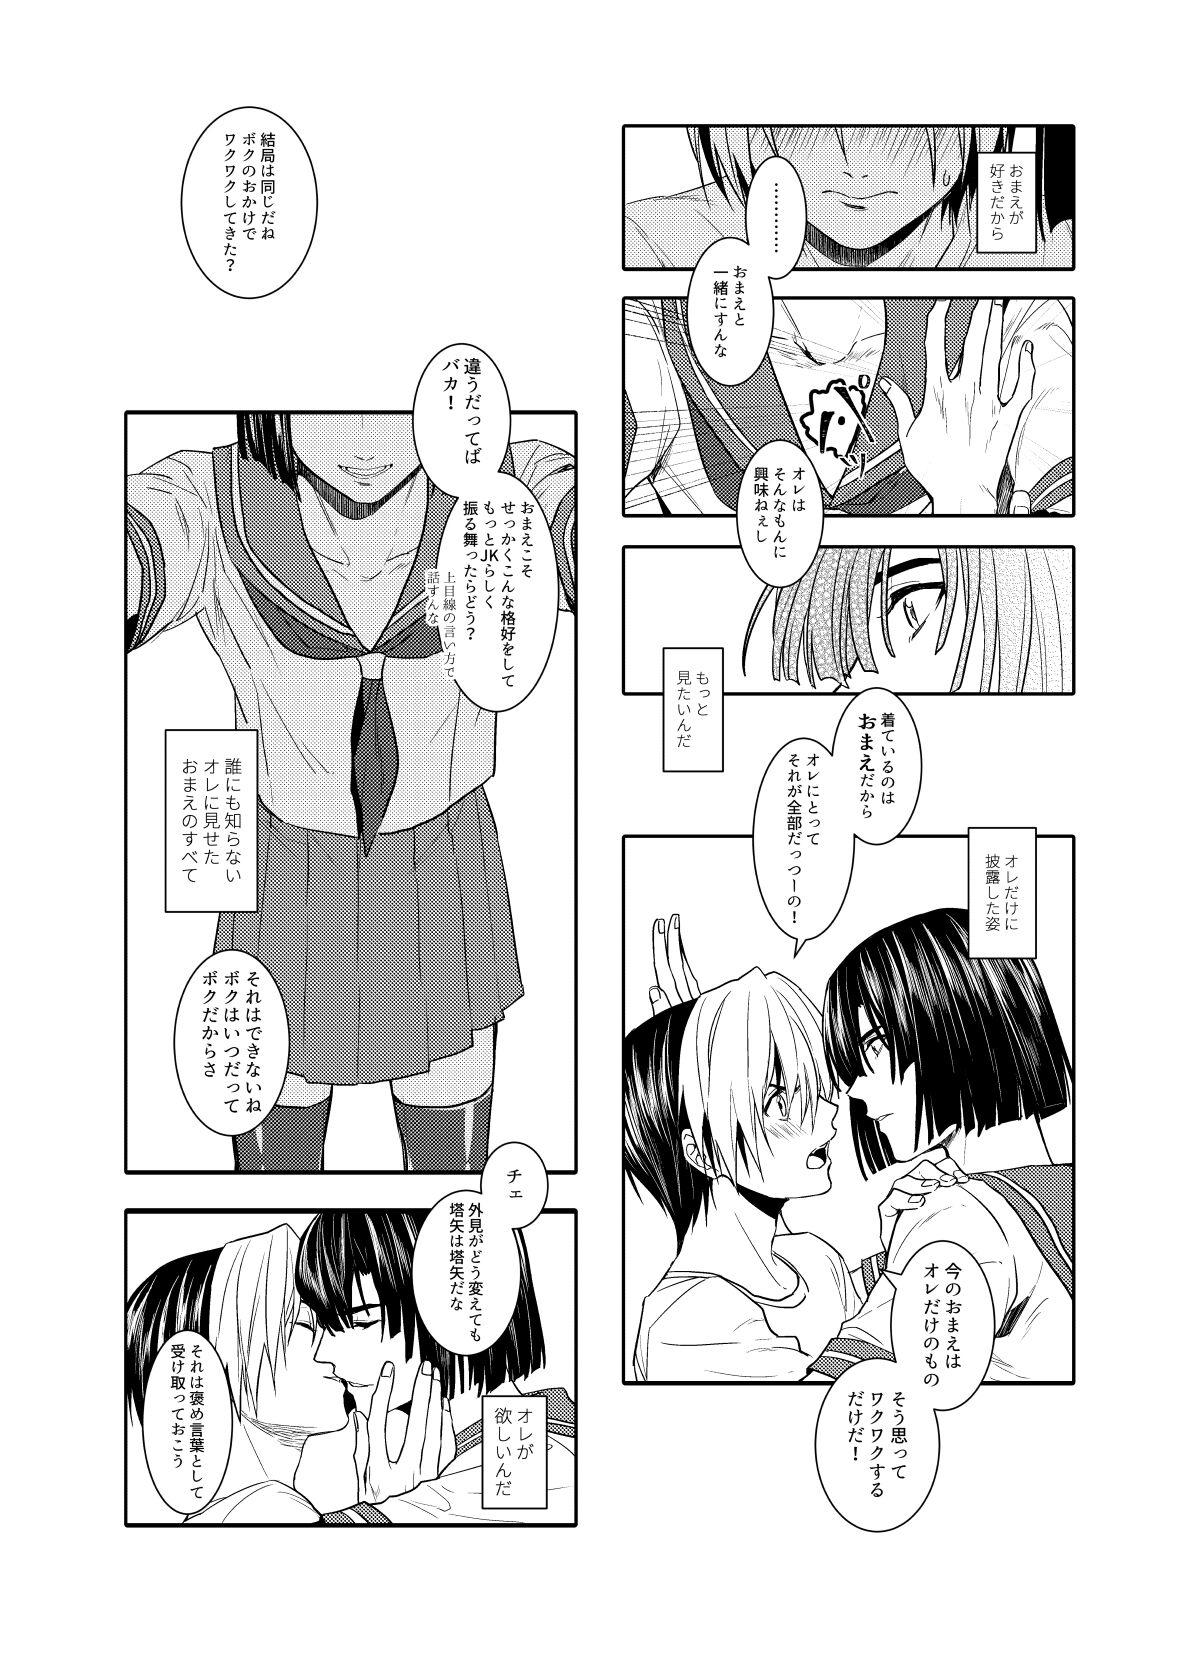 Leaked Saikyou ♂ Kanojo - Hikaru no go Chunky - Page 6